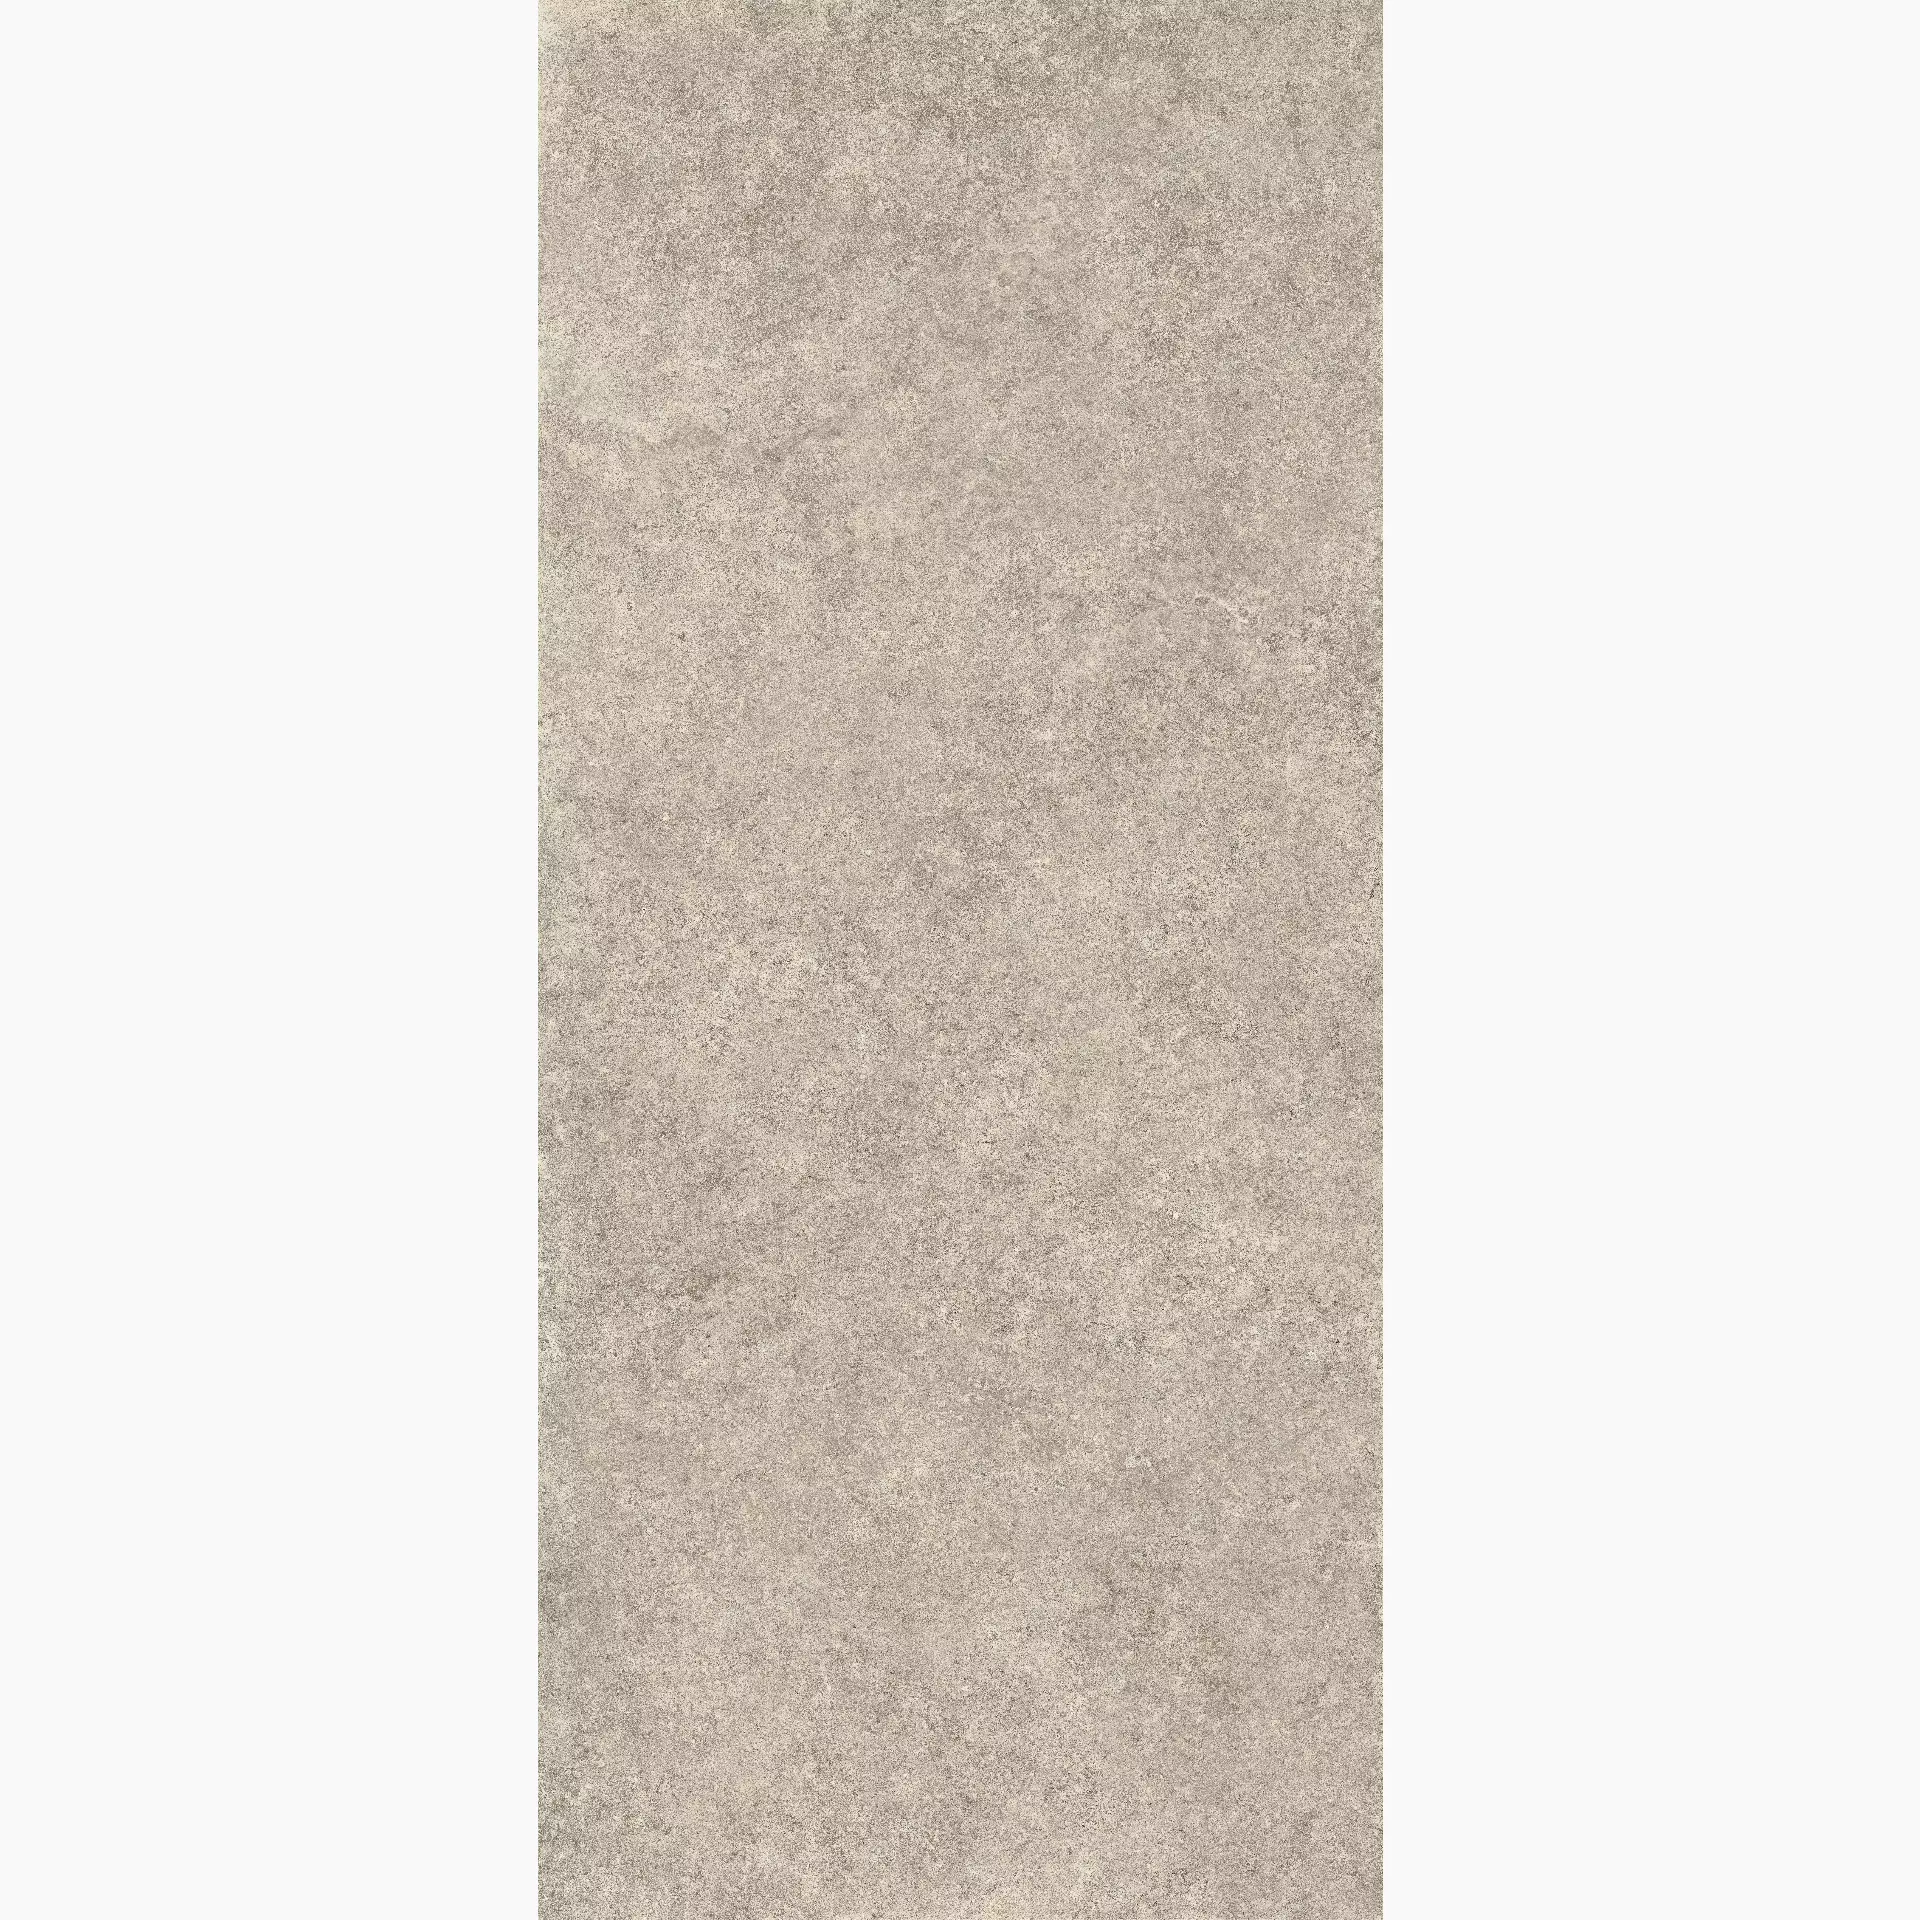 Cottodeste Kerlite Pura Sand Chiseled EK6PU80 120x278cm rectified 6,5mm